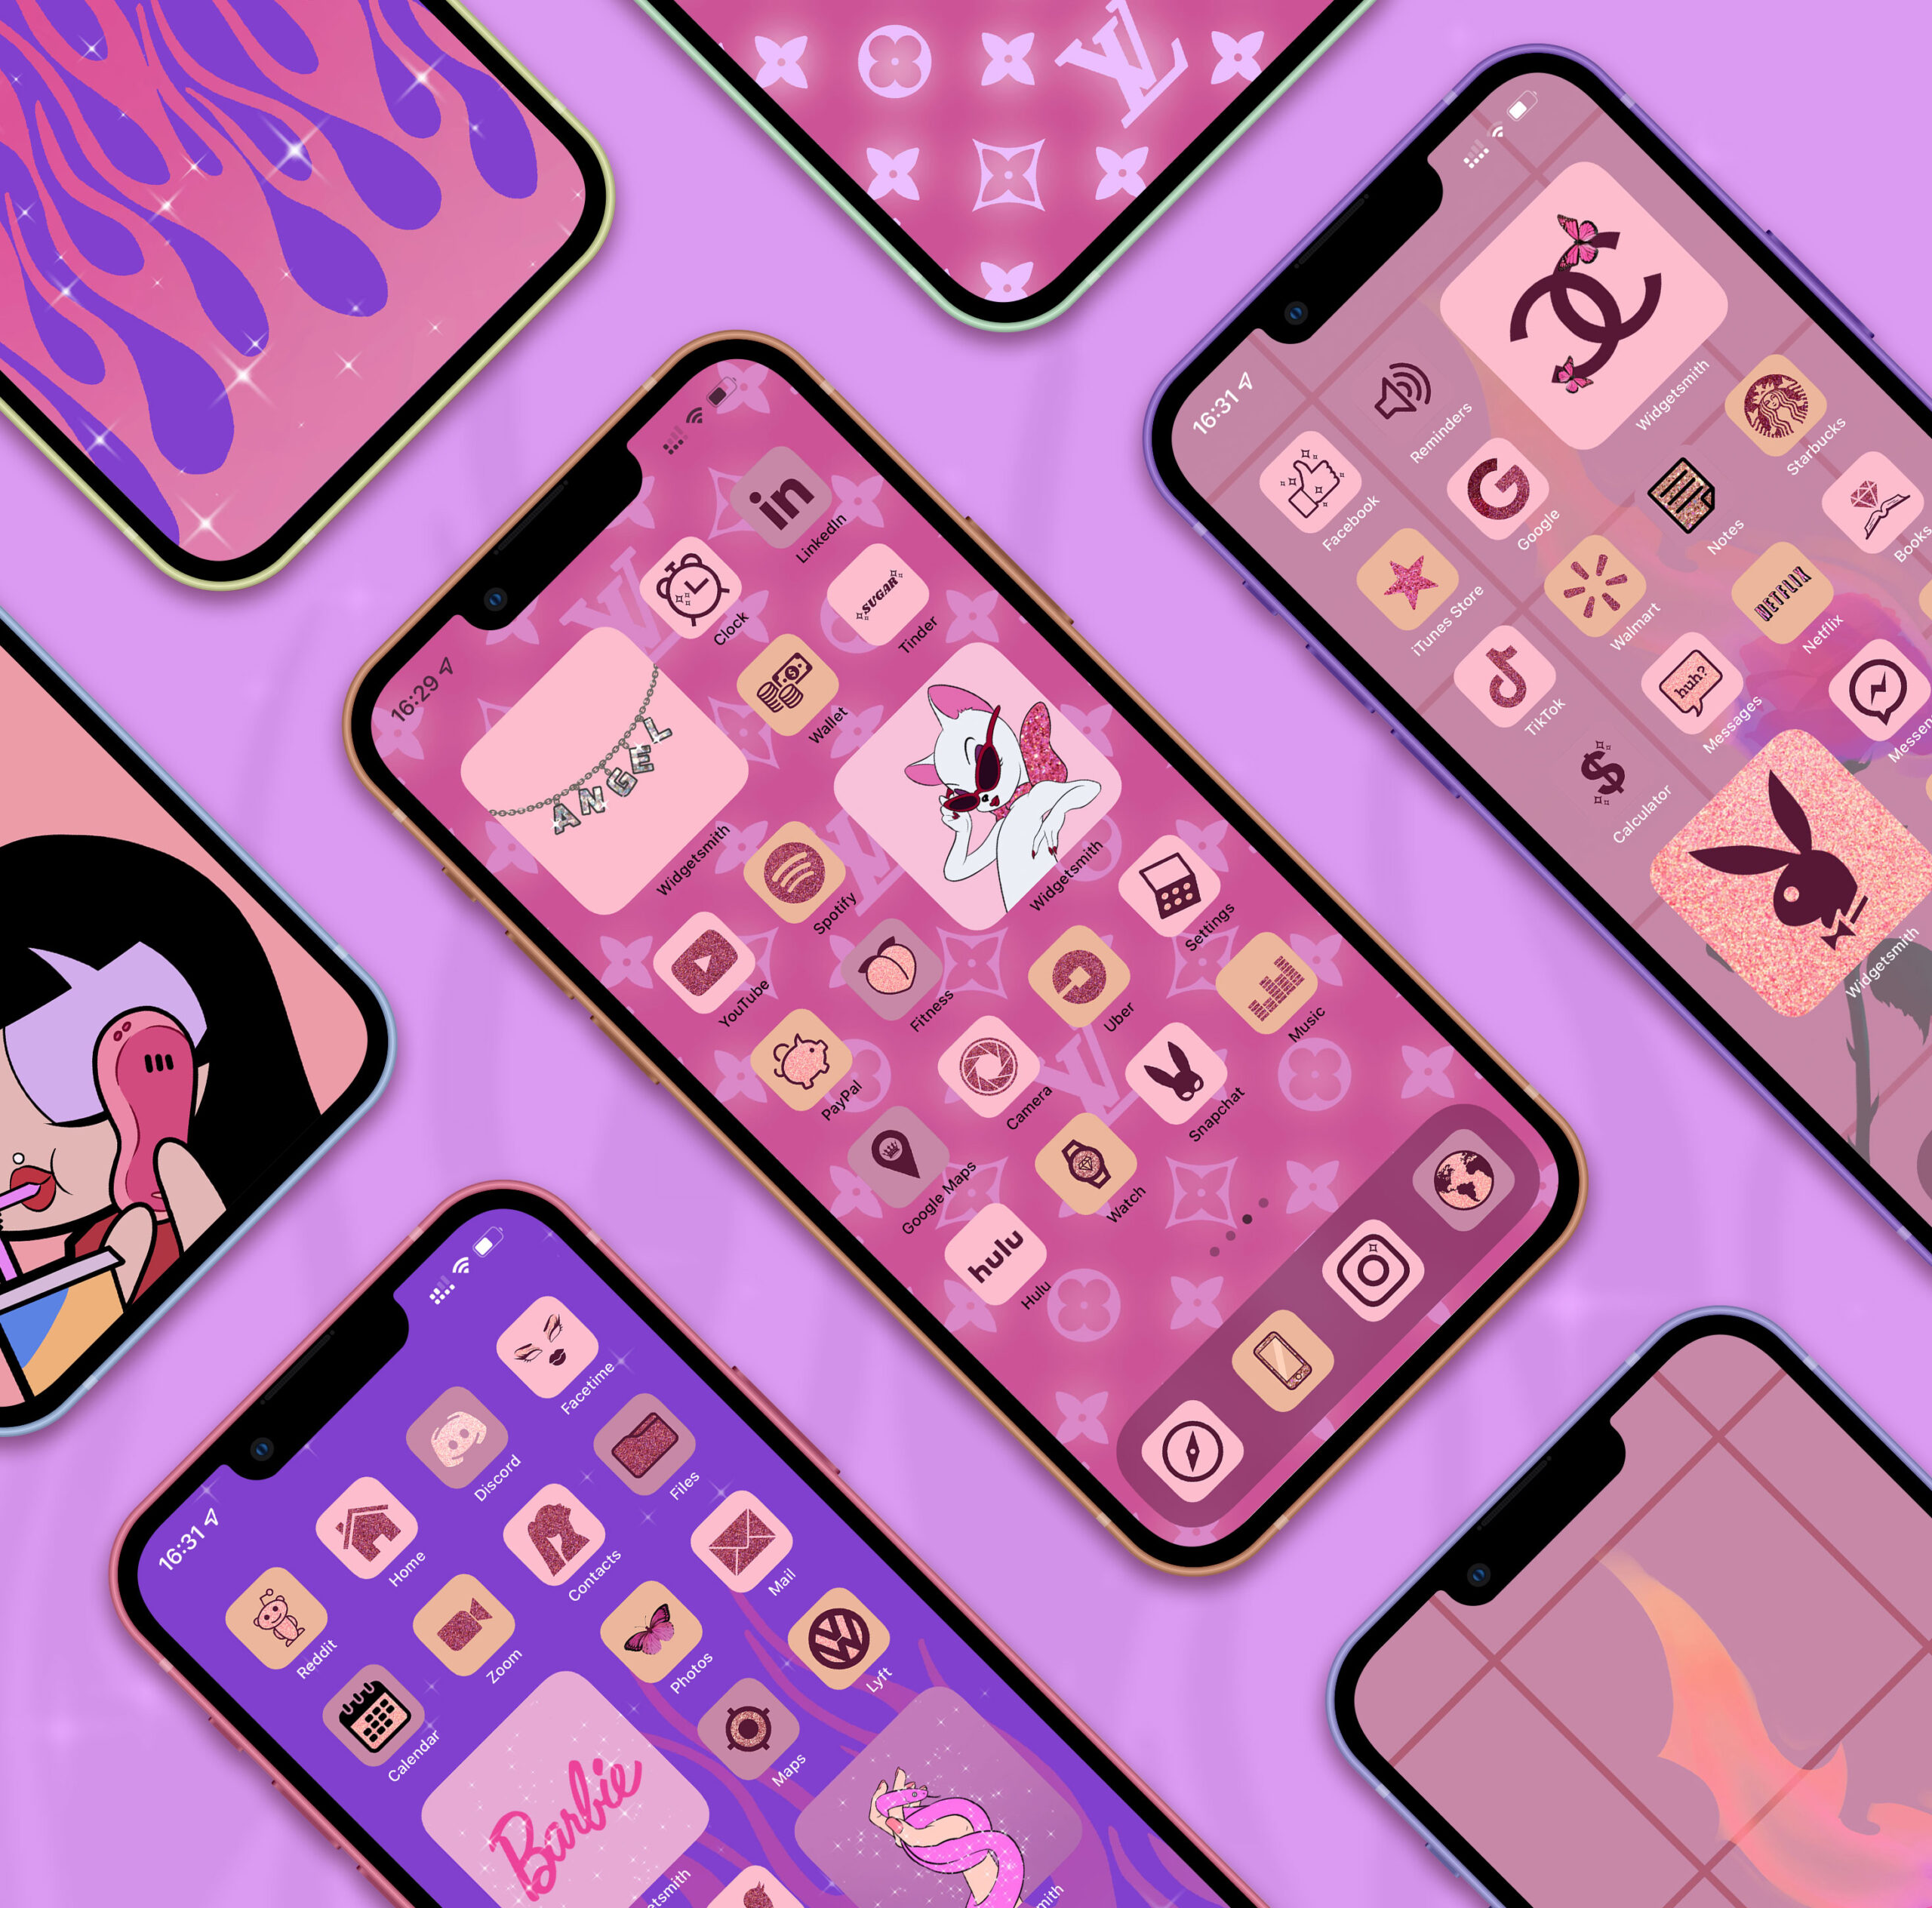 Bạn đang tìm kiếm một hình nền app thẩm mỹ xinh đẹp và đầy phong cách để làm mới giao diện iOS 14 của mình? Pink Baddie Aesthetic chính là giải pháp hoàn hảo cho bạn. Với gam màu hồng tươi tắn, nét vẽ tinh tế và độ chuyên nghiệp, hình nền sẽ giúp cho màn hình của bạn trở nên nổi bật và cuốn hút hơn bao giờ hết.